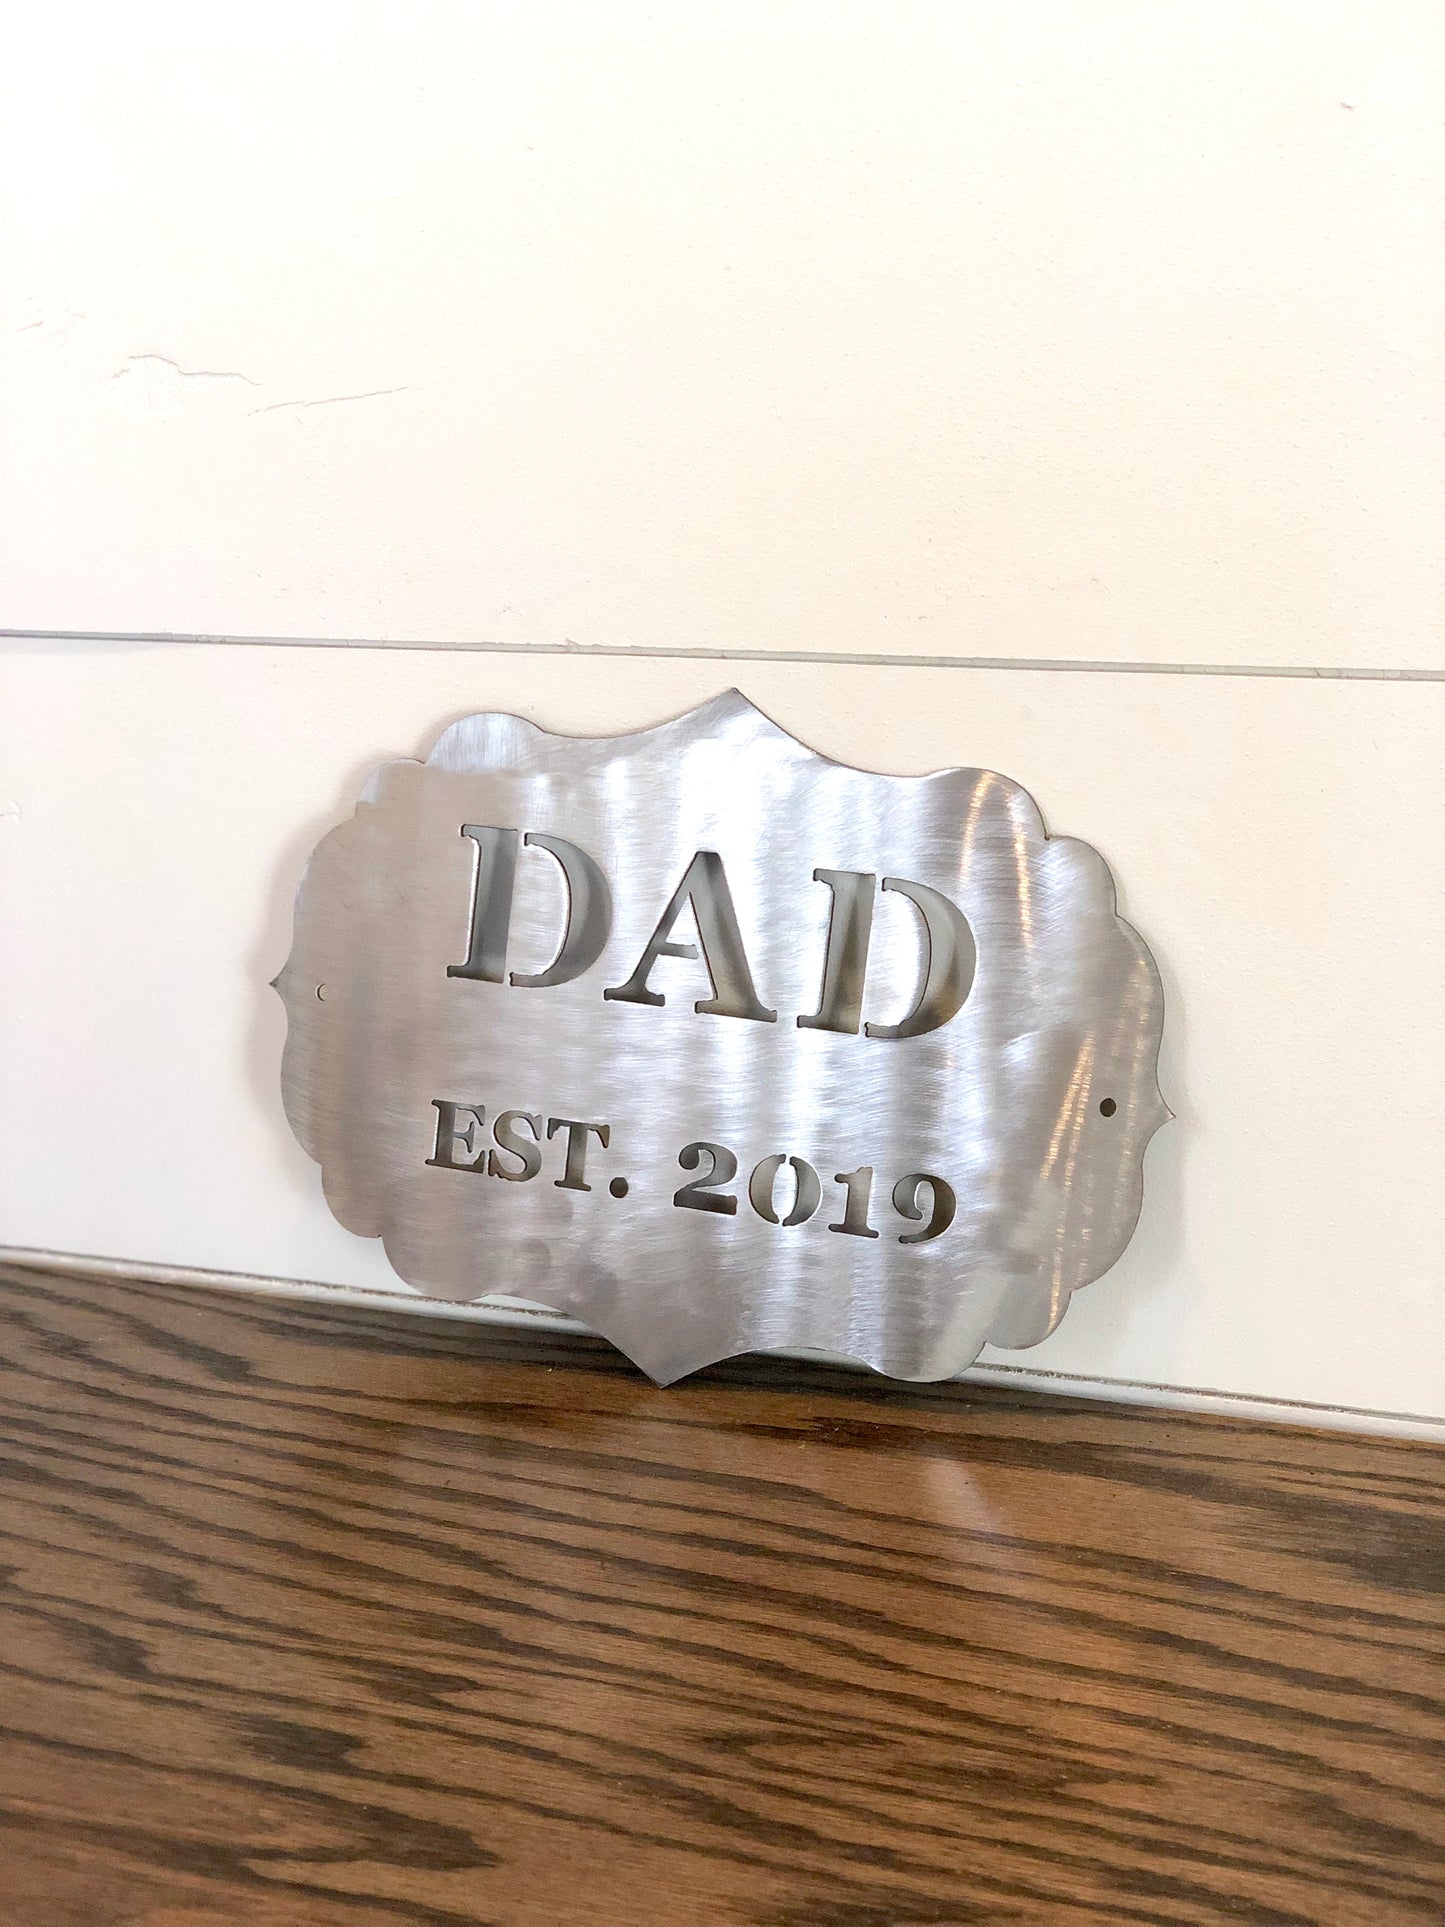 DAD established Metal Wall Hanging